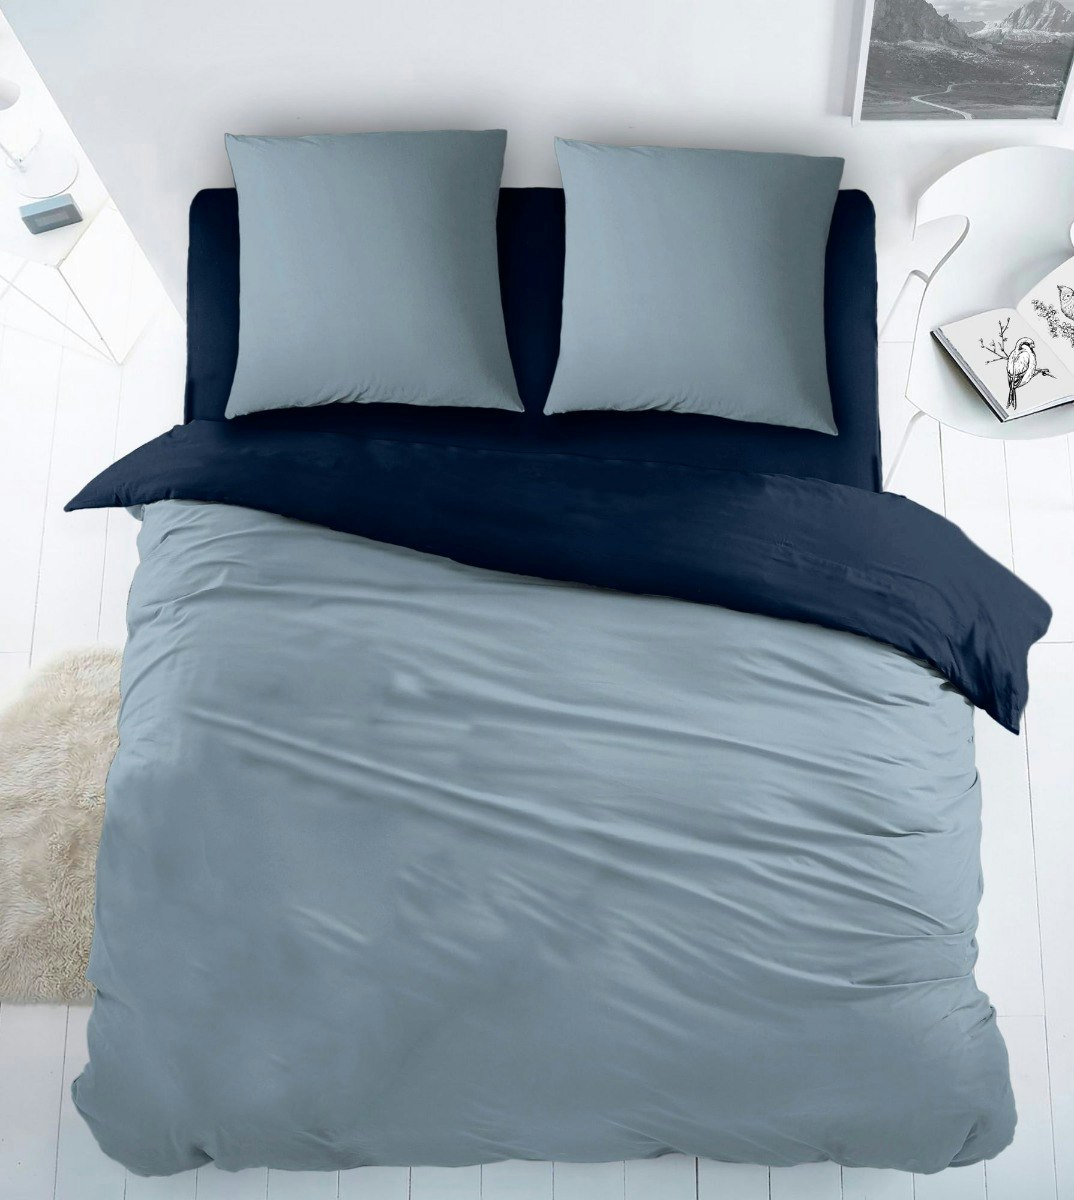 Sleepnight housse de couette Bicolor Bleu Marine/Bleu Claire Coton